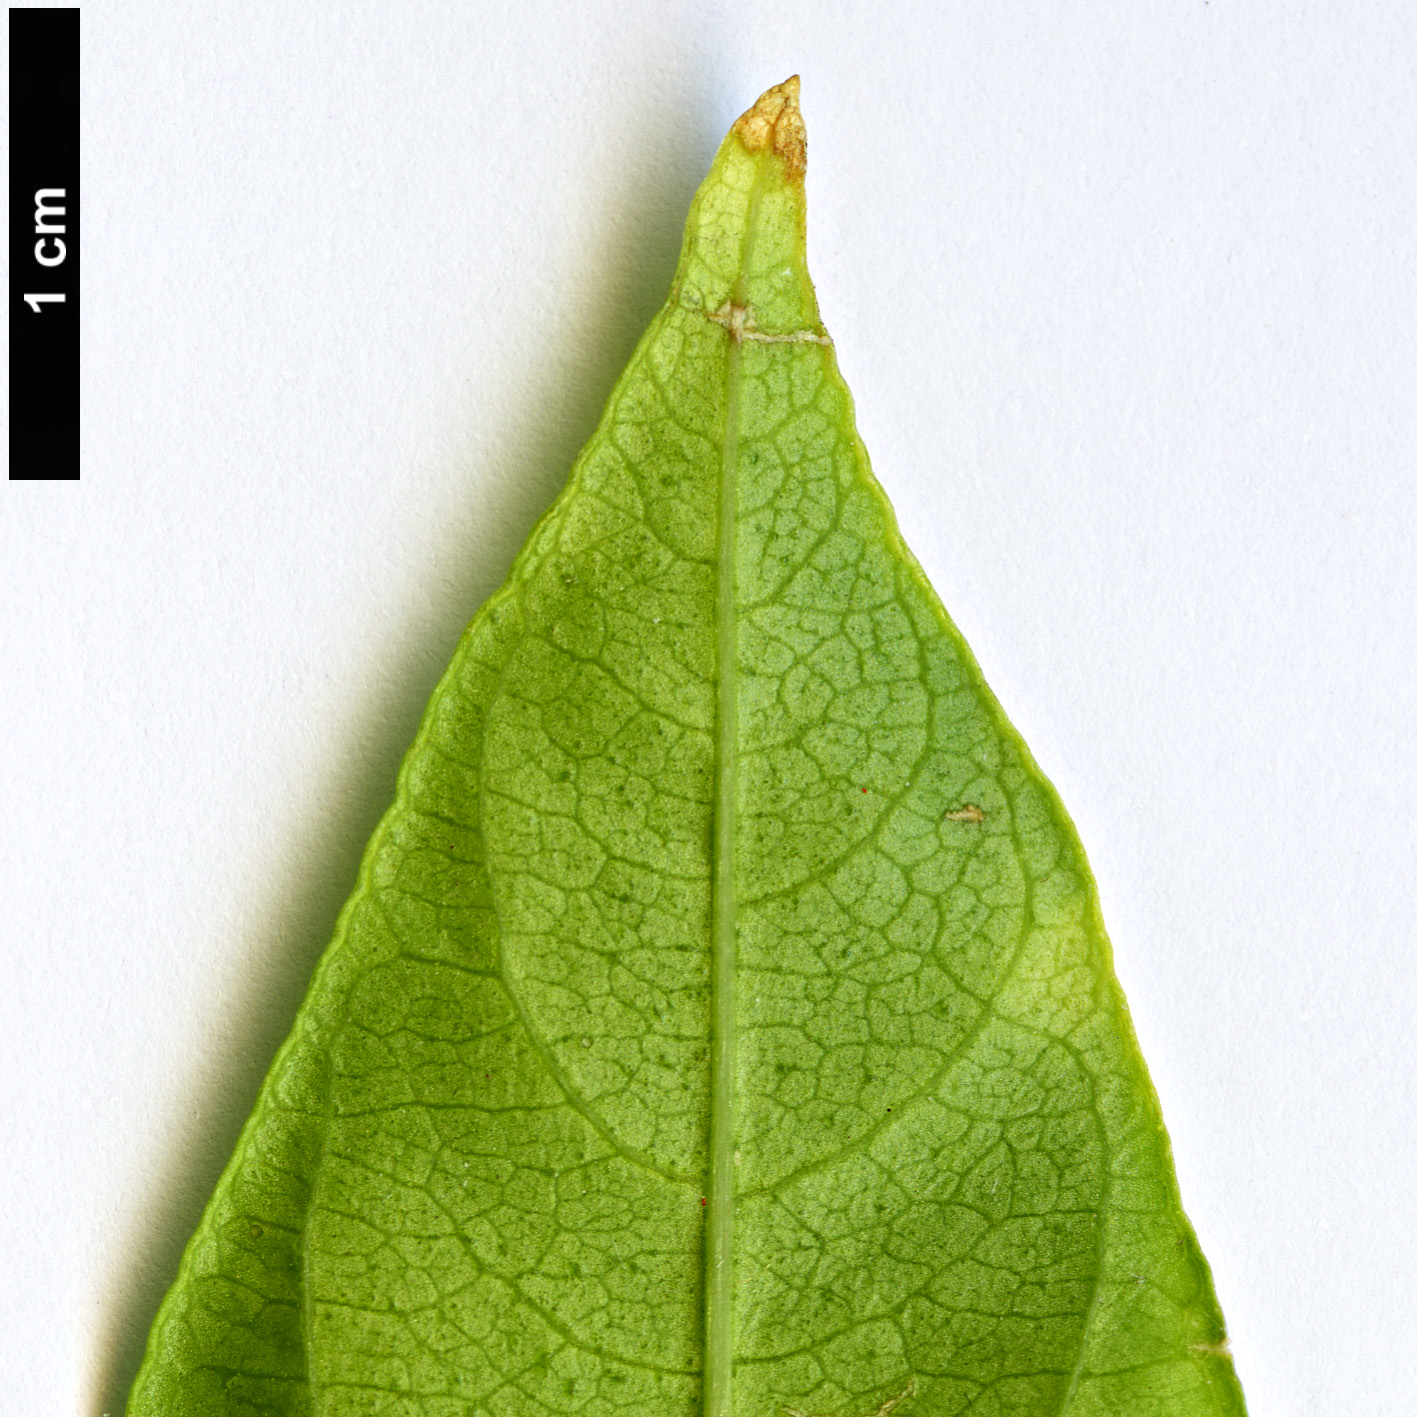 High resolution image: Family: Solanaceae - Genus: Cestrum - Taxon: nocturnum